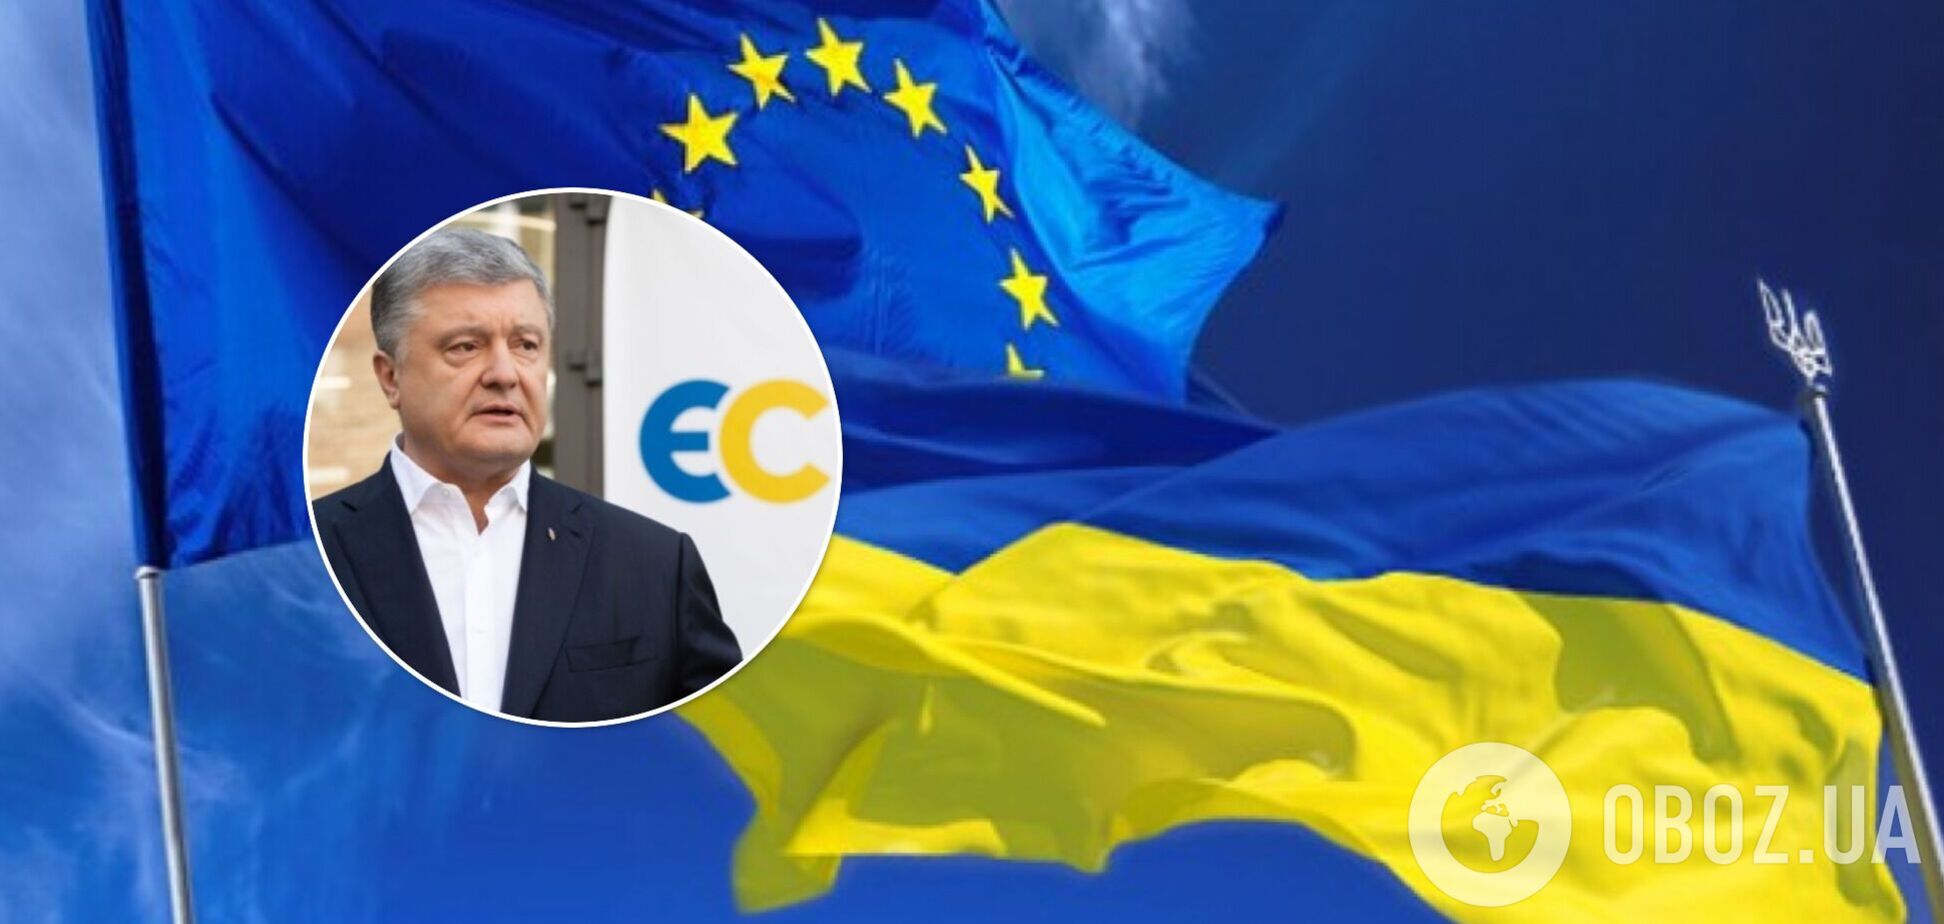 Порошенко привітав українців з річницею підписання Угоди про асоціацію з ЄС